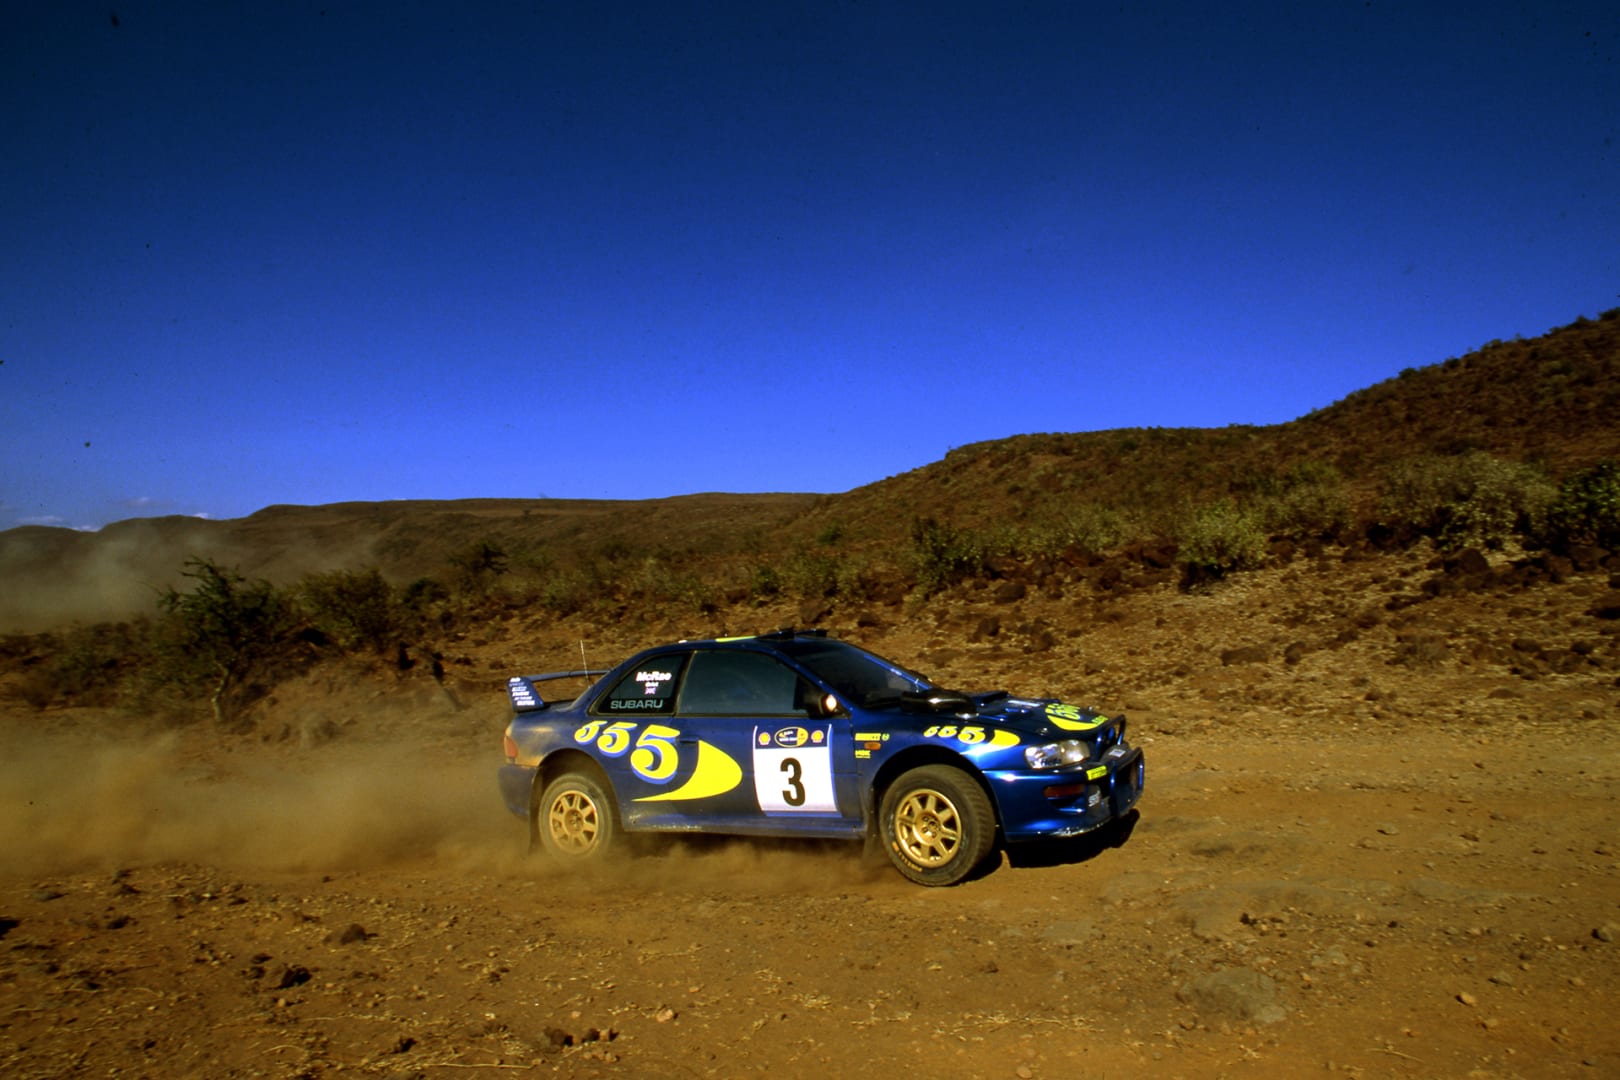 File:Colin McRae's 1995 World Championship winning Subaru Impreza